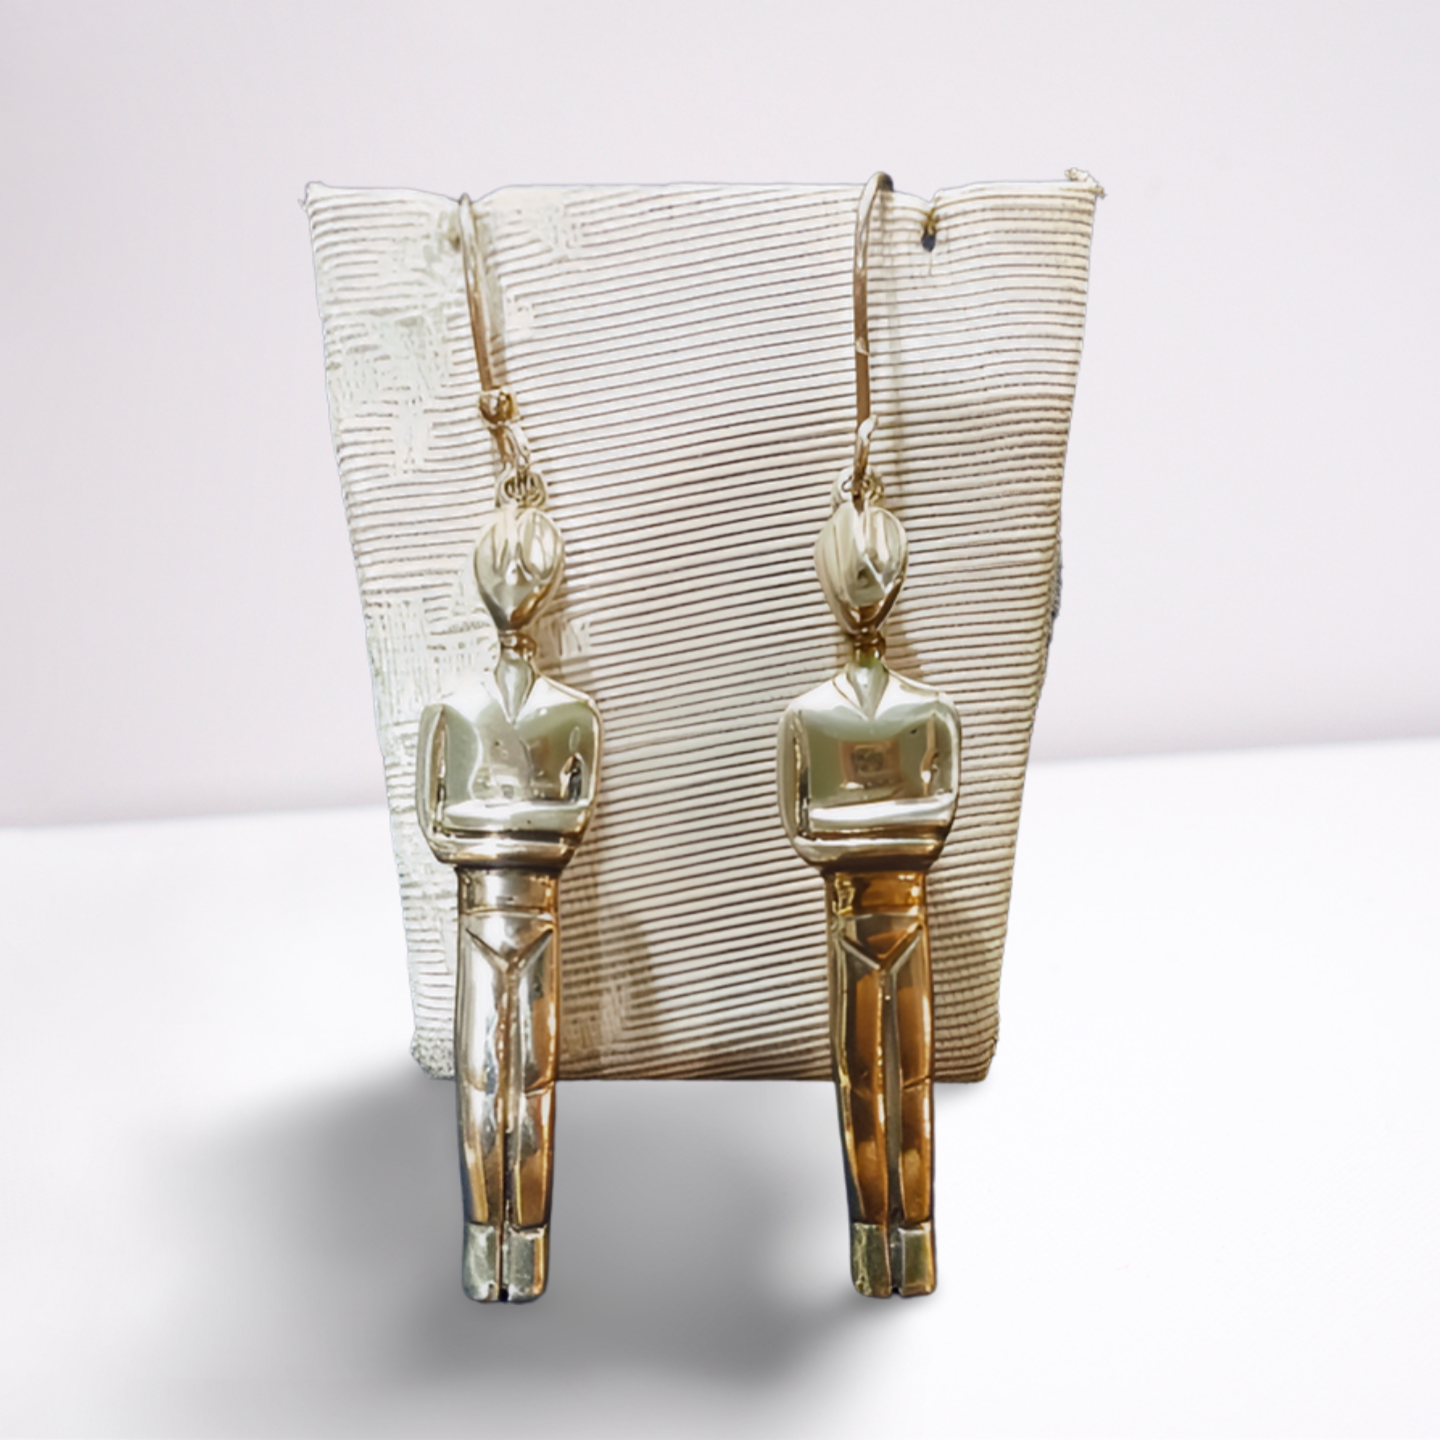 Greek Cycladic Earrings, sterling silver earrings, Greek Jewelry, handmade  earrings, Head of a figurine type Plastira Earrings (AG-10)